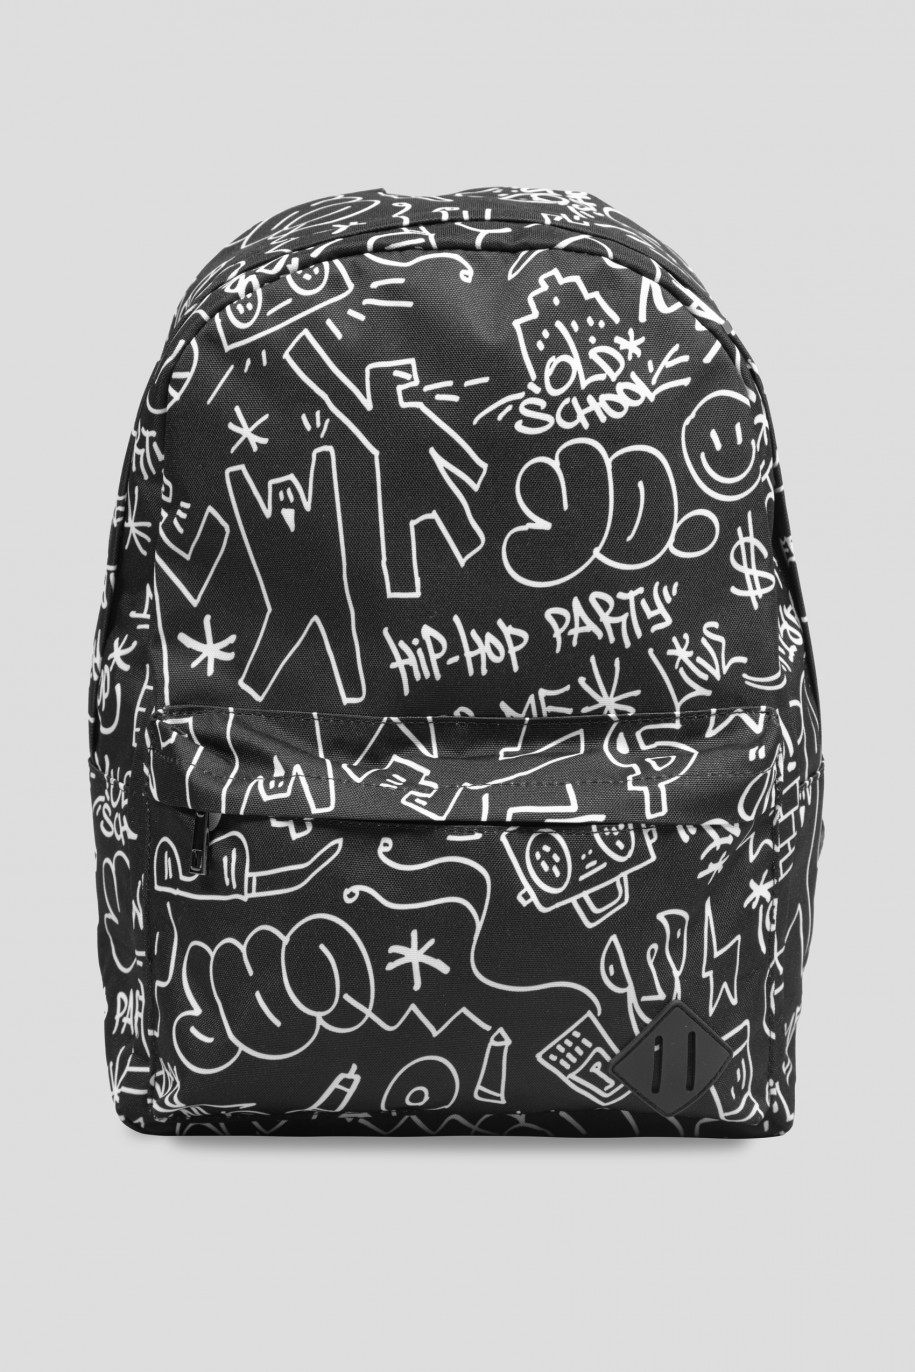 czarny plecak graffiti reporter young